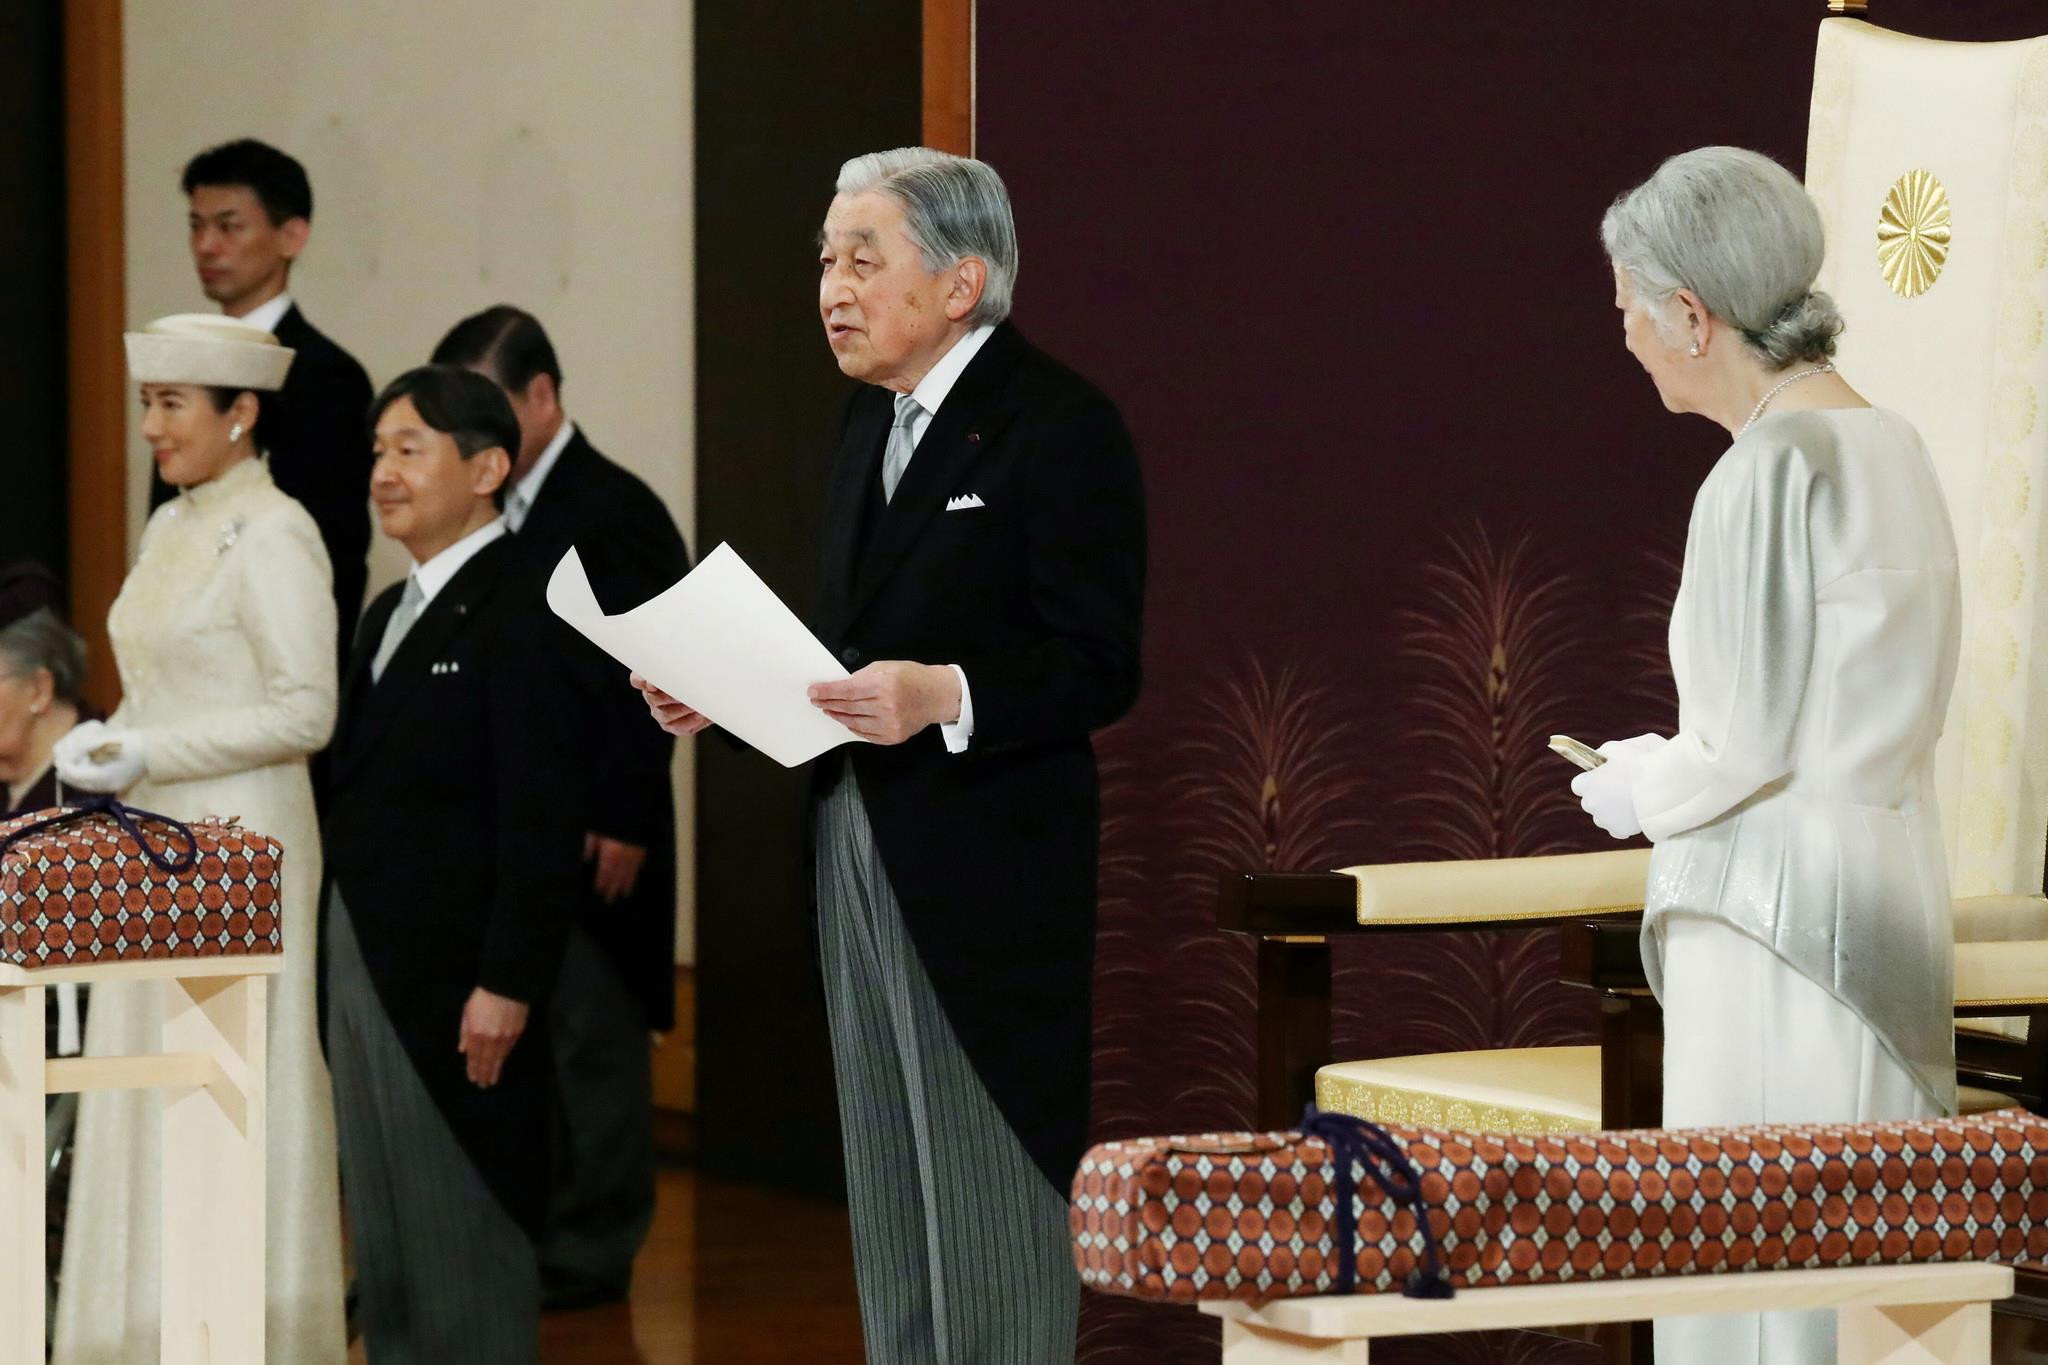 Nhật Hoàng Akihito (giữa), Hoàng hậu Michiko (phải) cùng các thành viên Hoàng gia tại lễ thoái vị trong Hoàng cung ở Tokyo ngày 30/4/2019. Ảnh: AFP/TTXVN